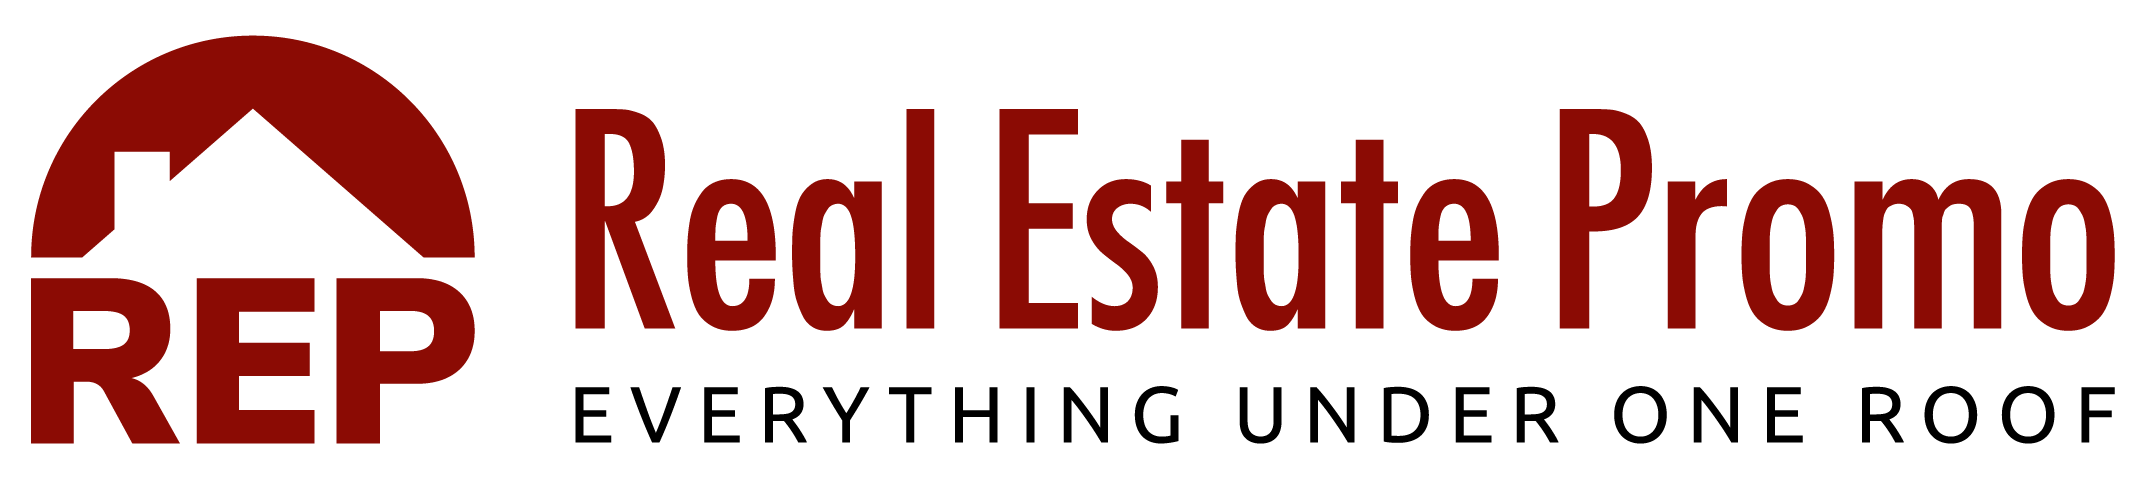 Visit Real Estate Promo